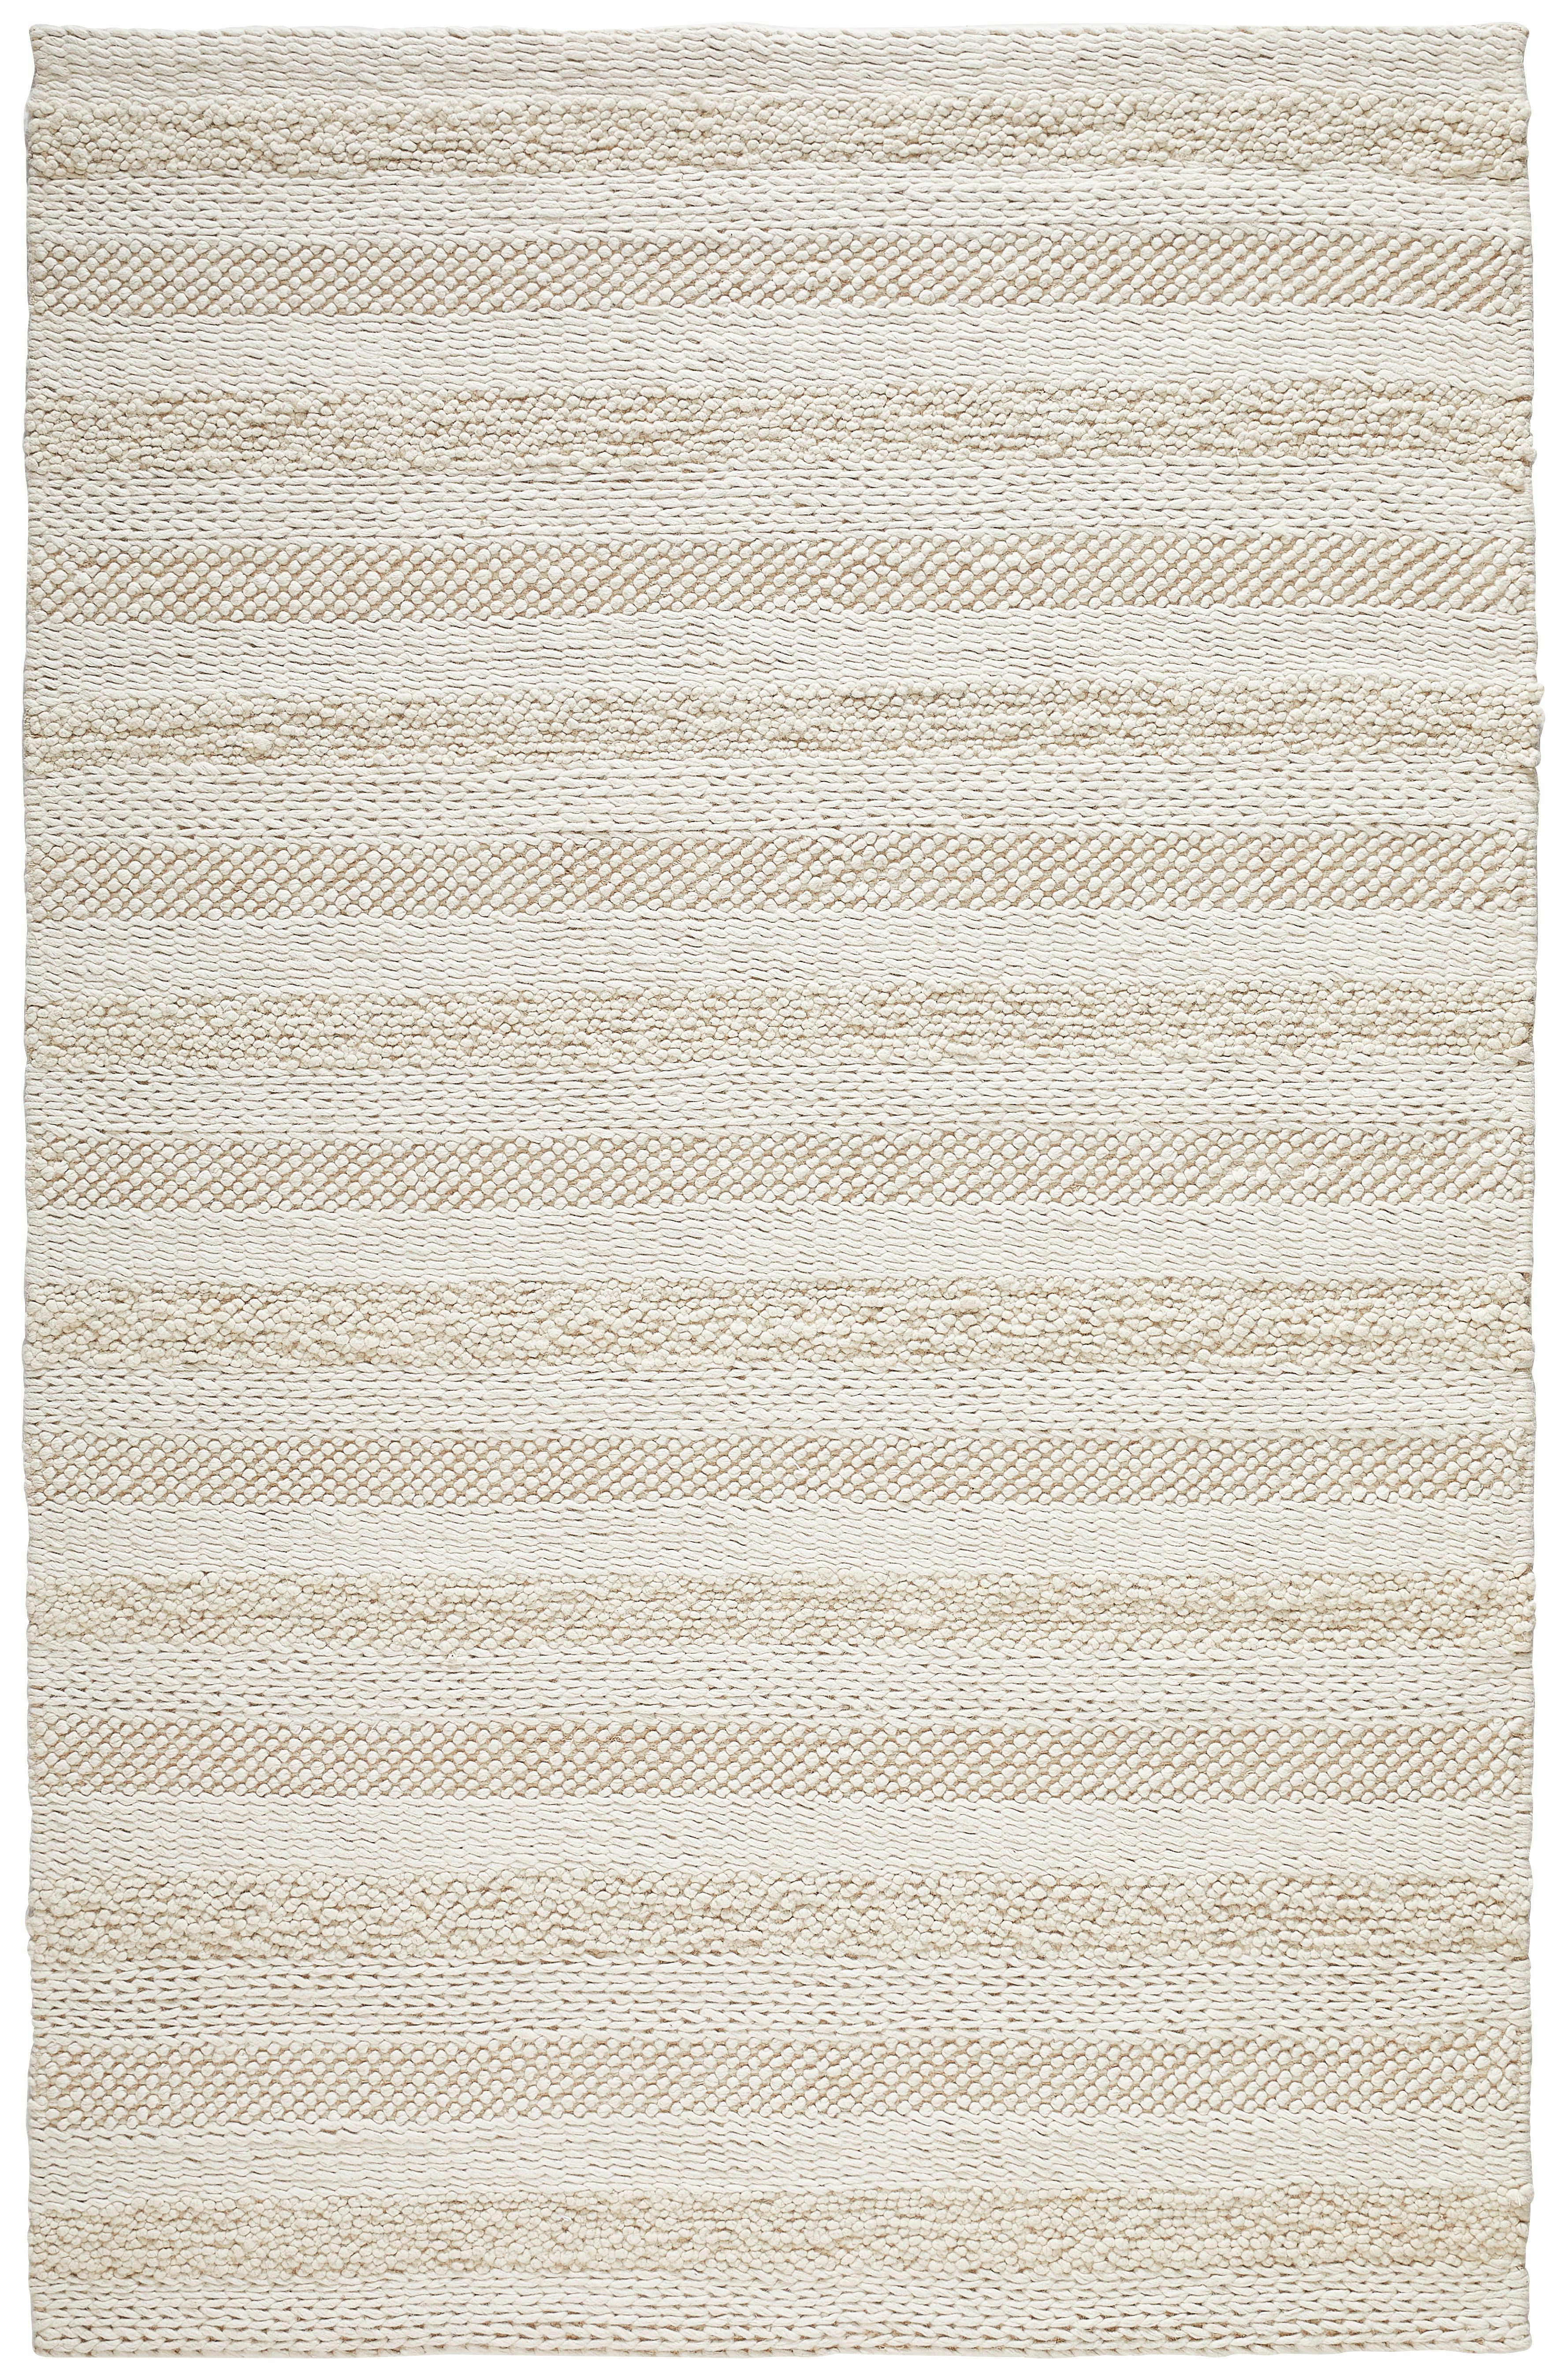 KÉZI SZÖVÉSŰ SZŐNYEG  Nordic Stripes  - krém, Natur, textil (160/230cm) - Linea Natura